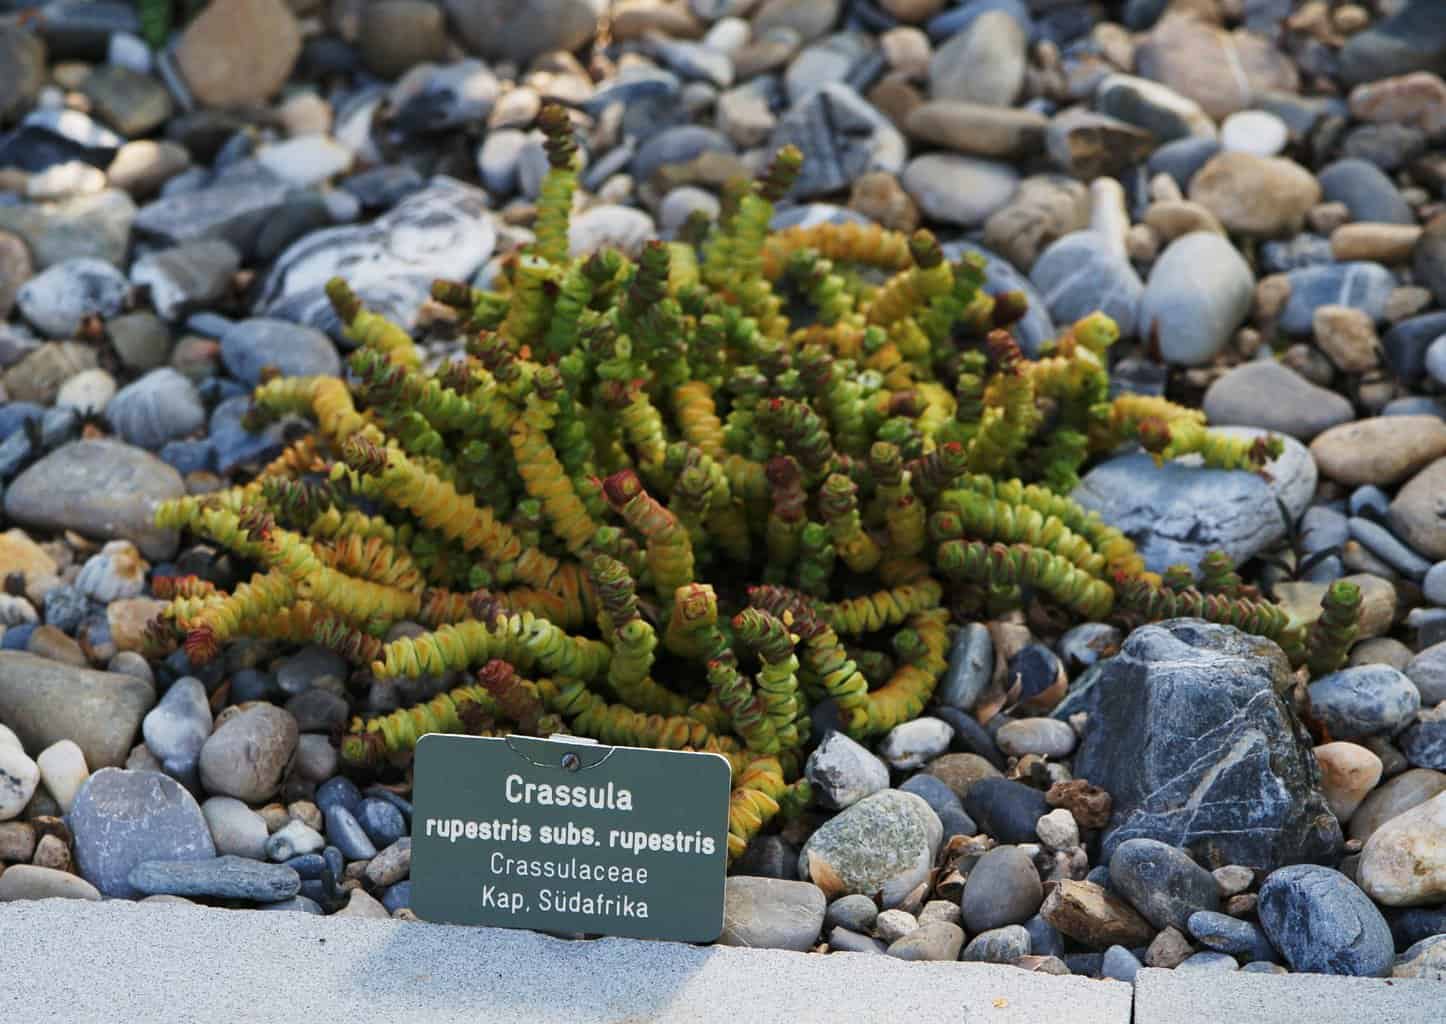 Crassula rupestris subsp